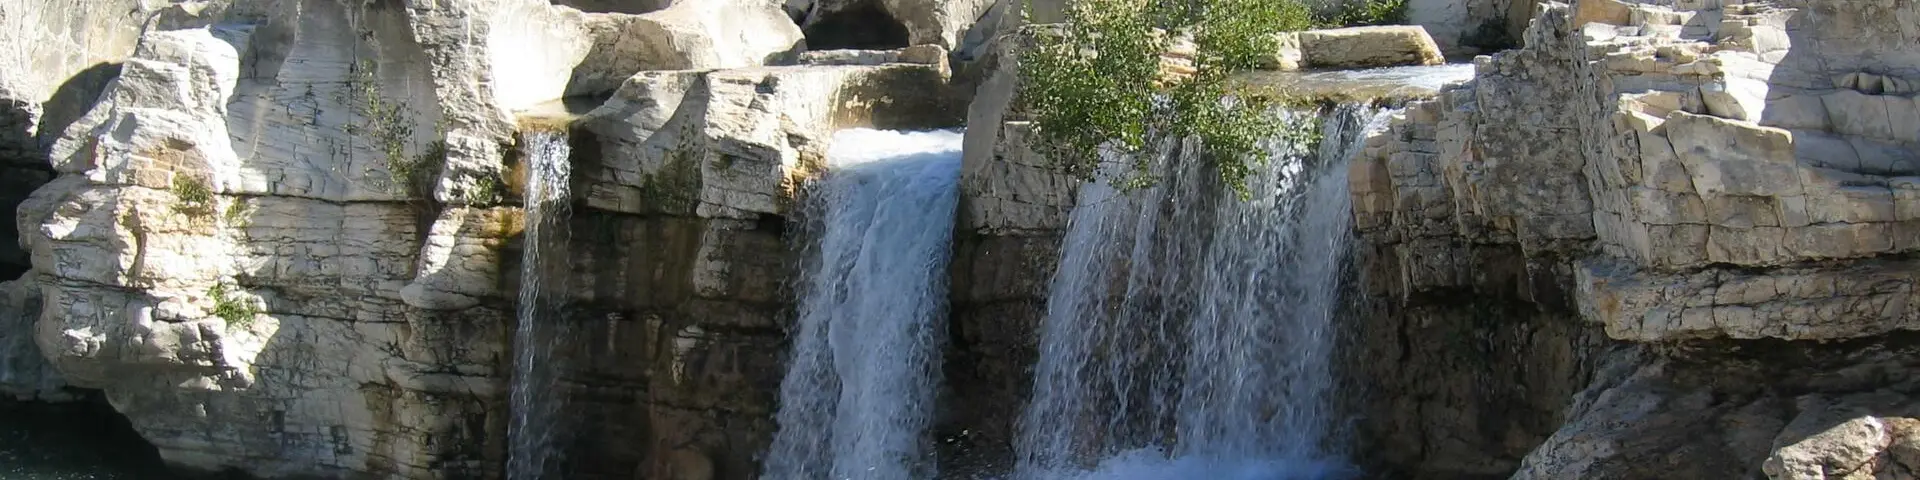 The Sautadet falls, Gard